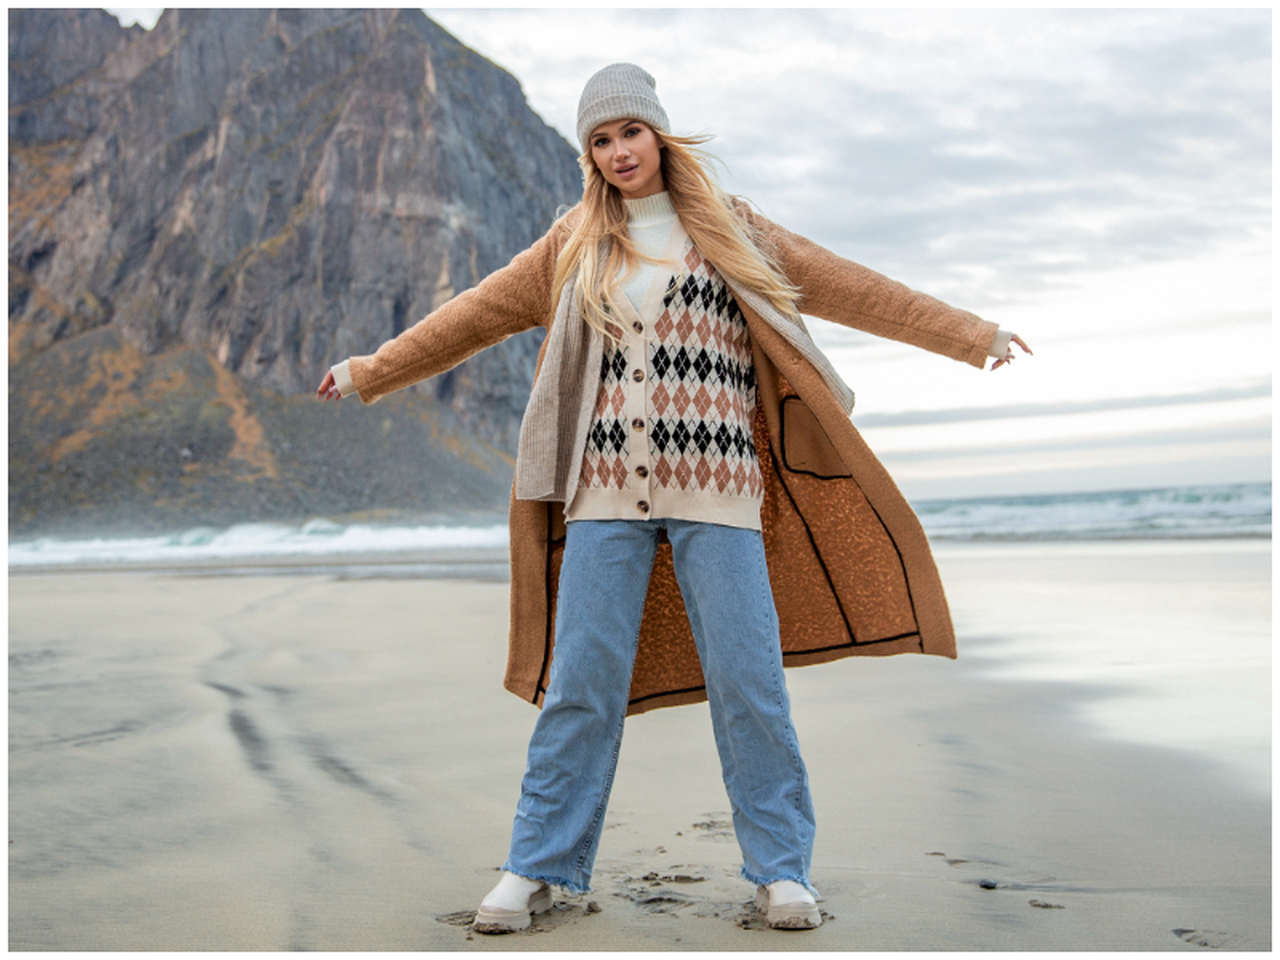 Swetry damskie na zimę – najpopularniejsze modele w sprzedaży hurtowej!